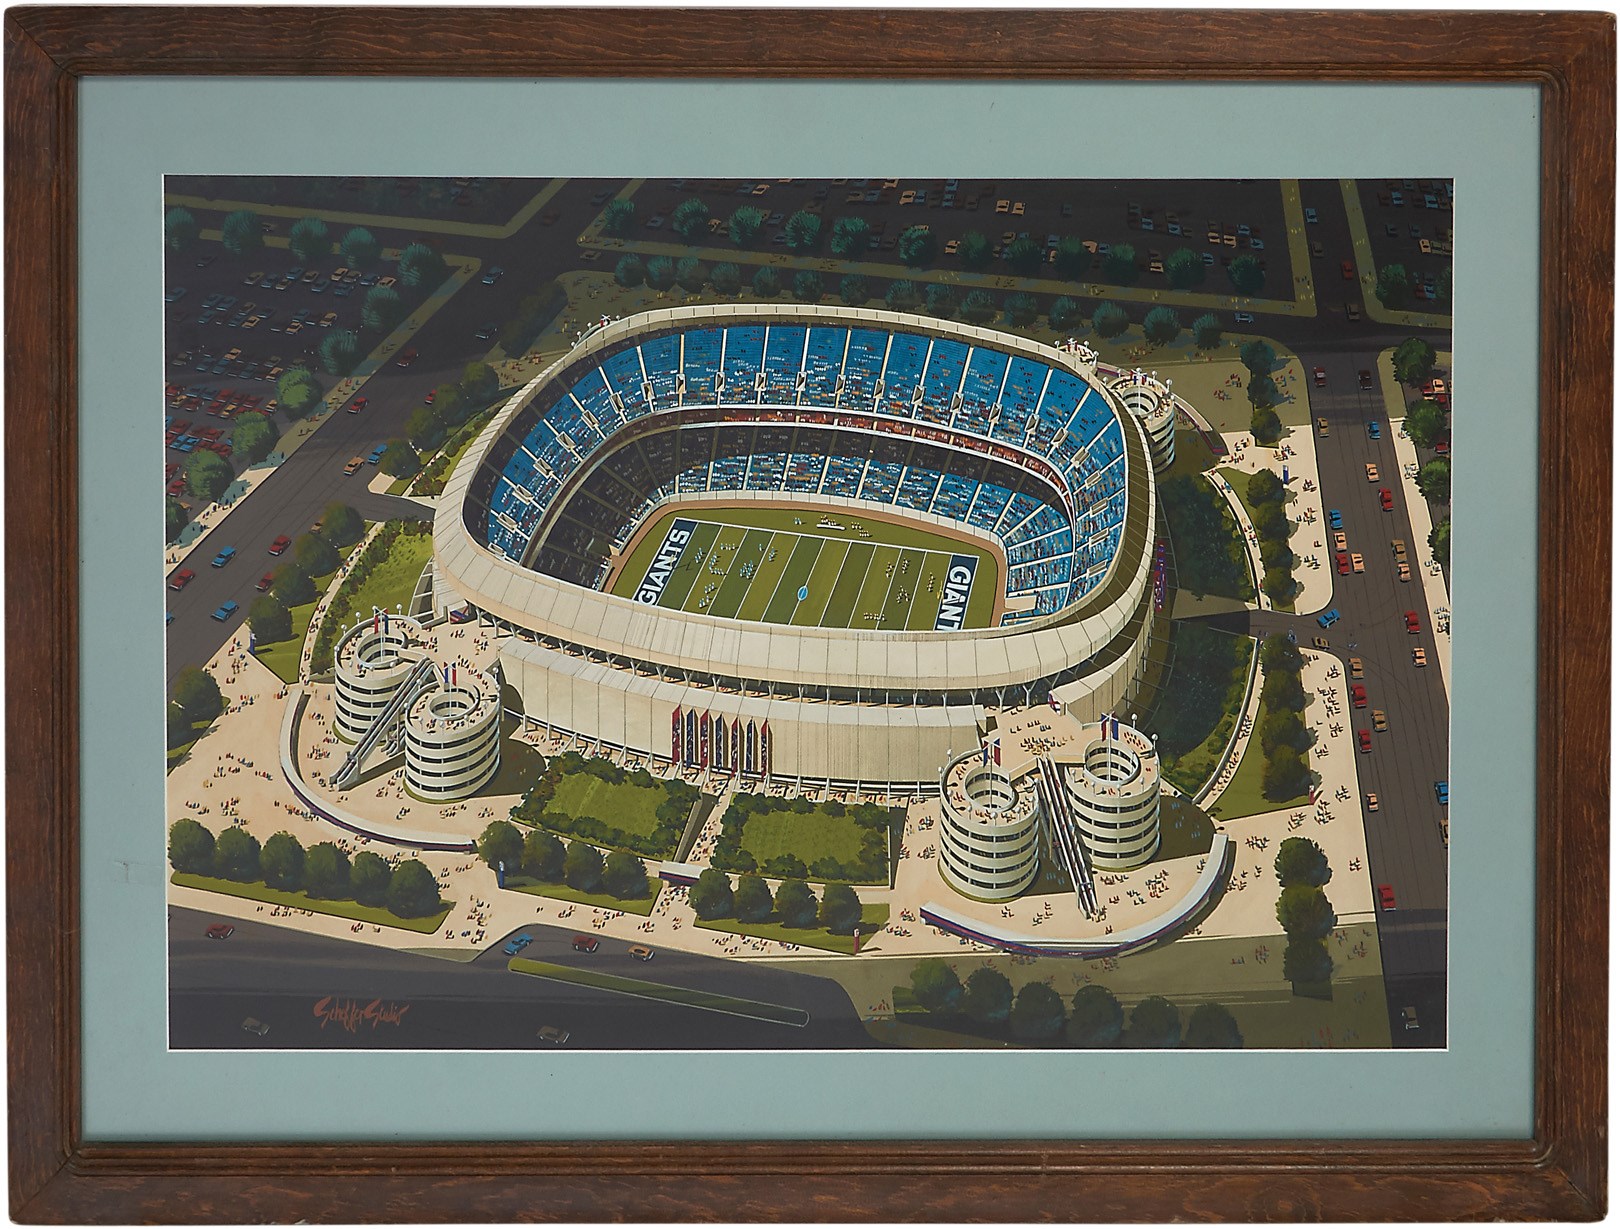 - Magnificent 1972-73 Architect's Rendering of Original Giants Stadium